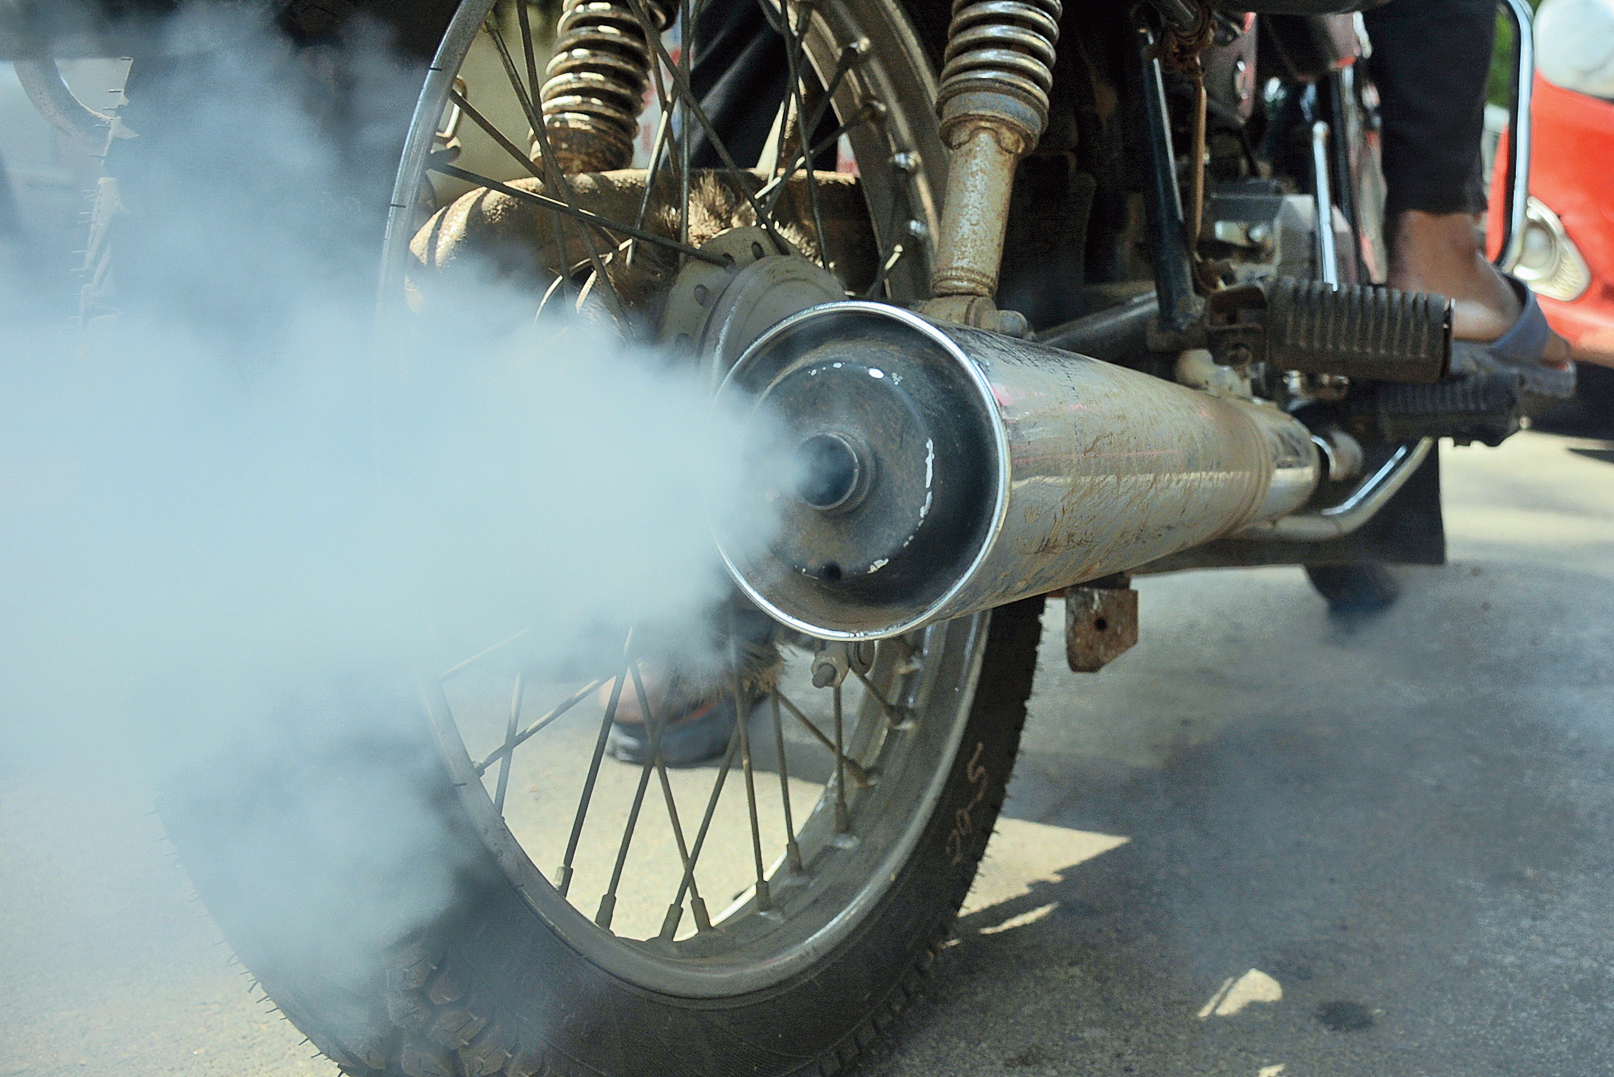 Alarming: A motorcycle emits smoke in Bhubaneswar. 